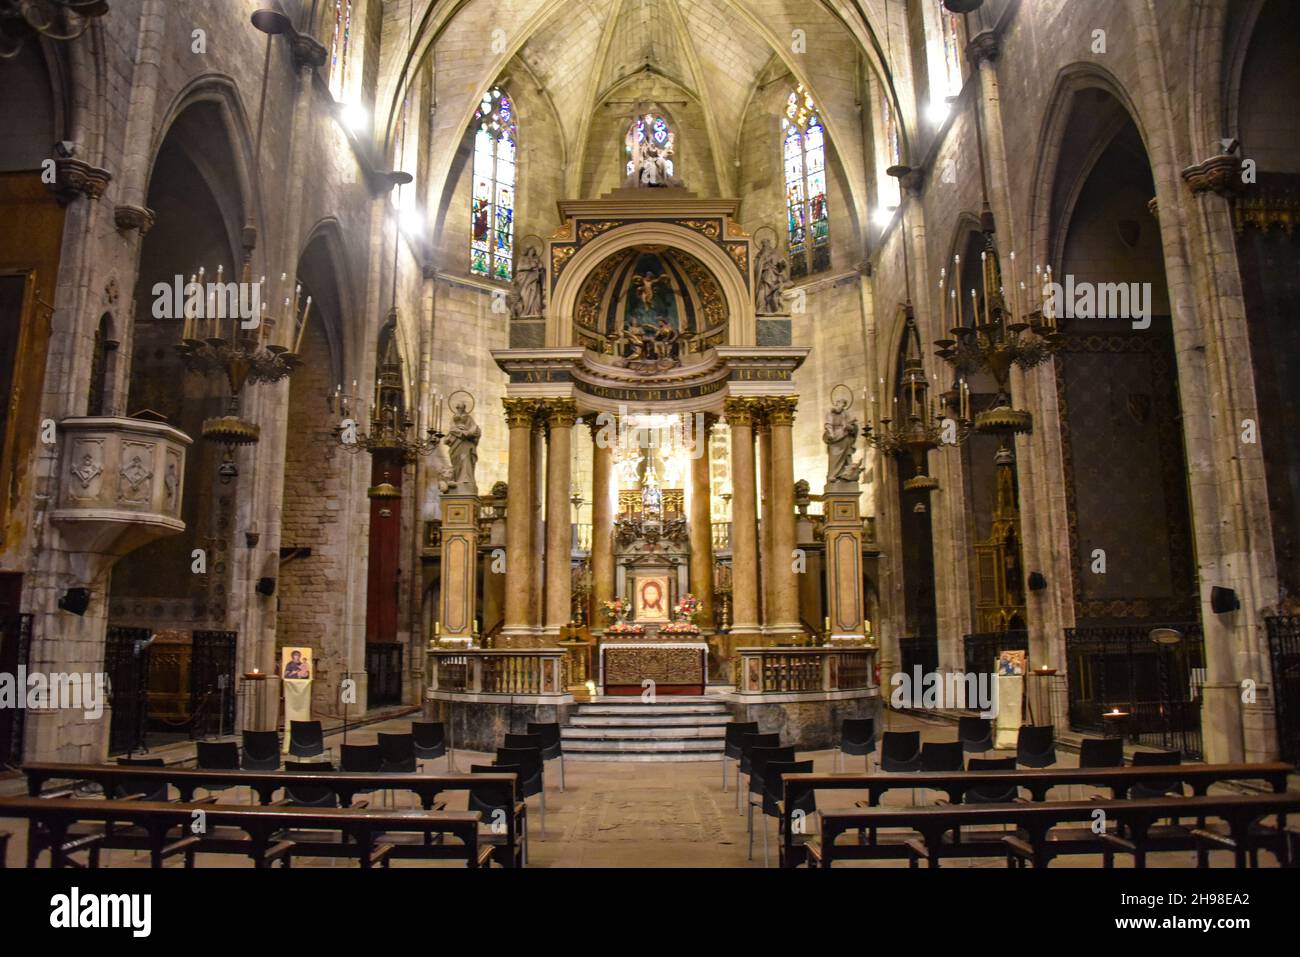 Barcelone, Espagne - 23 novembre 2021 : intérieur de la Basilique dels Sants Martirs juste i Pastor église, Barcelone, Catalogne, Espagne Banque D'Images